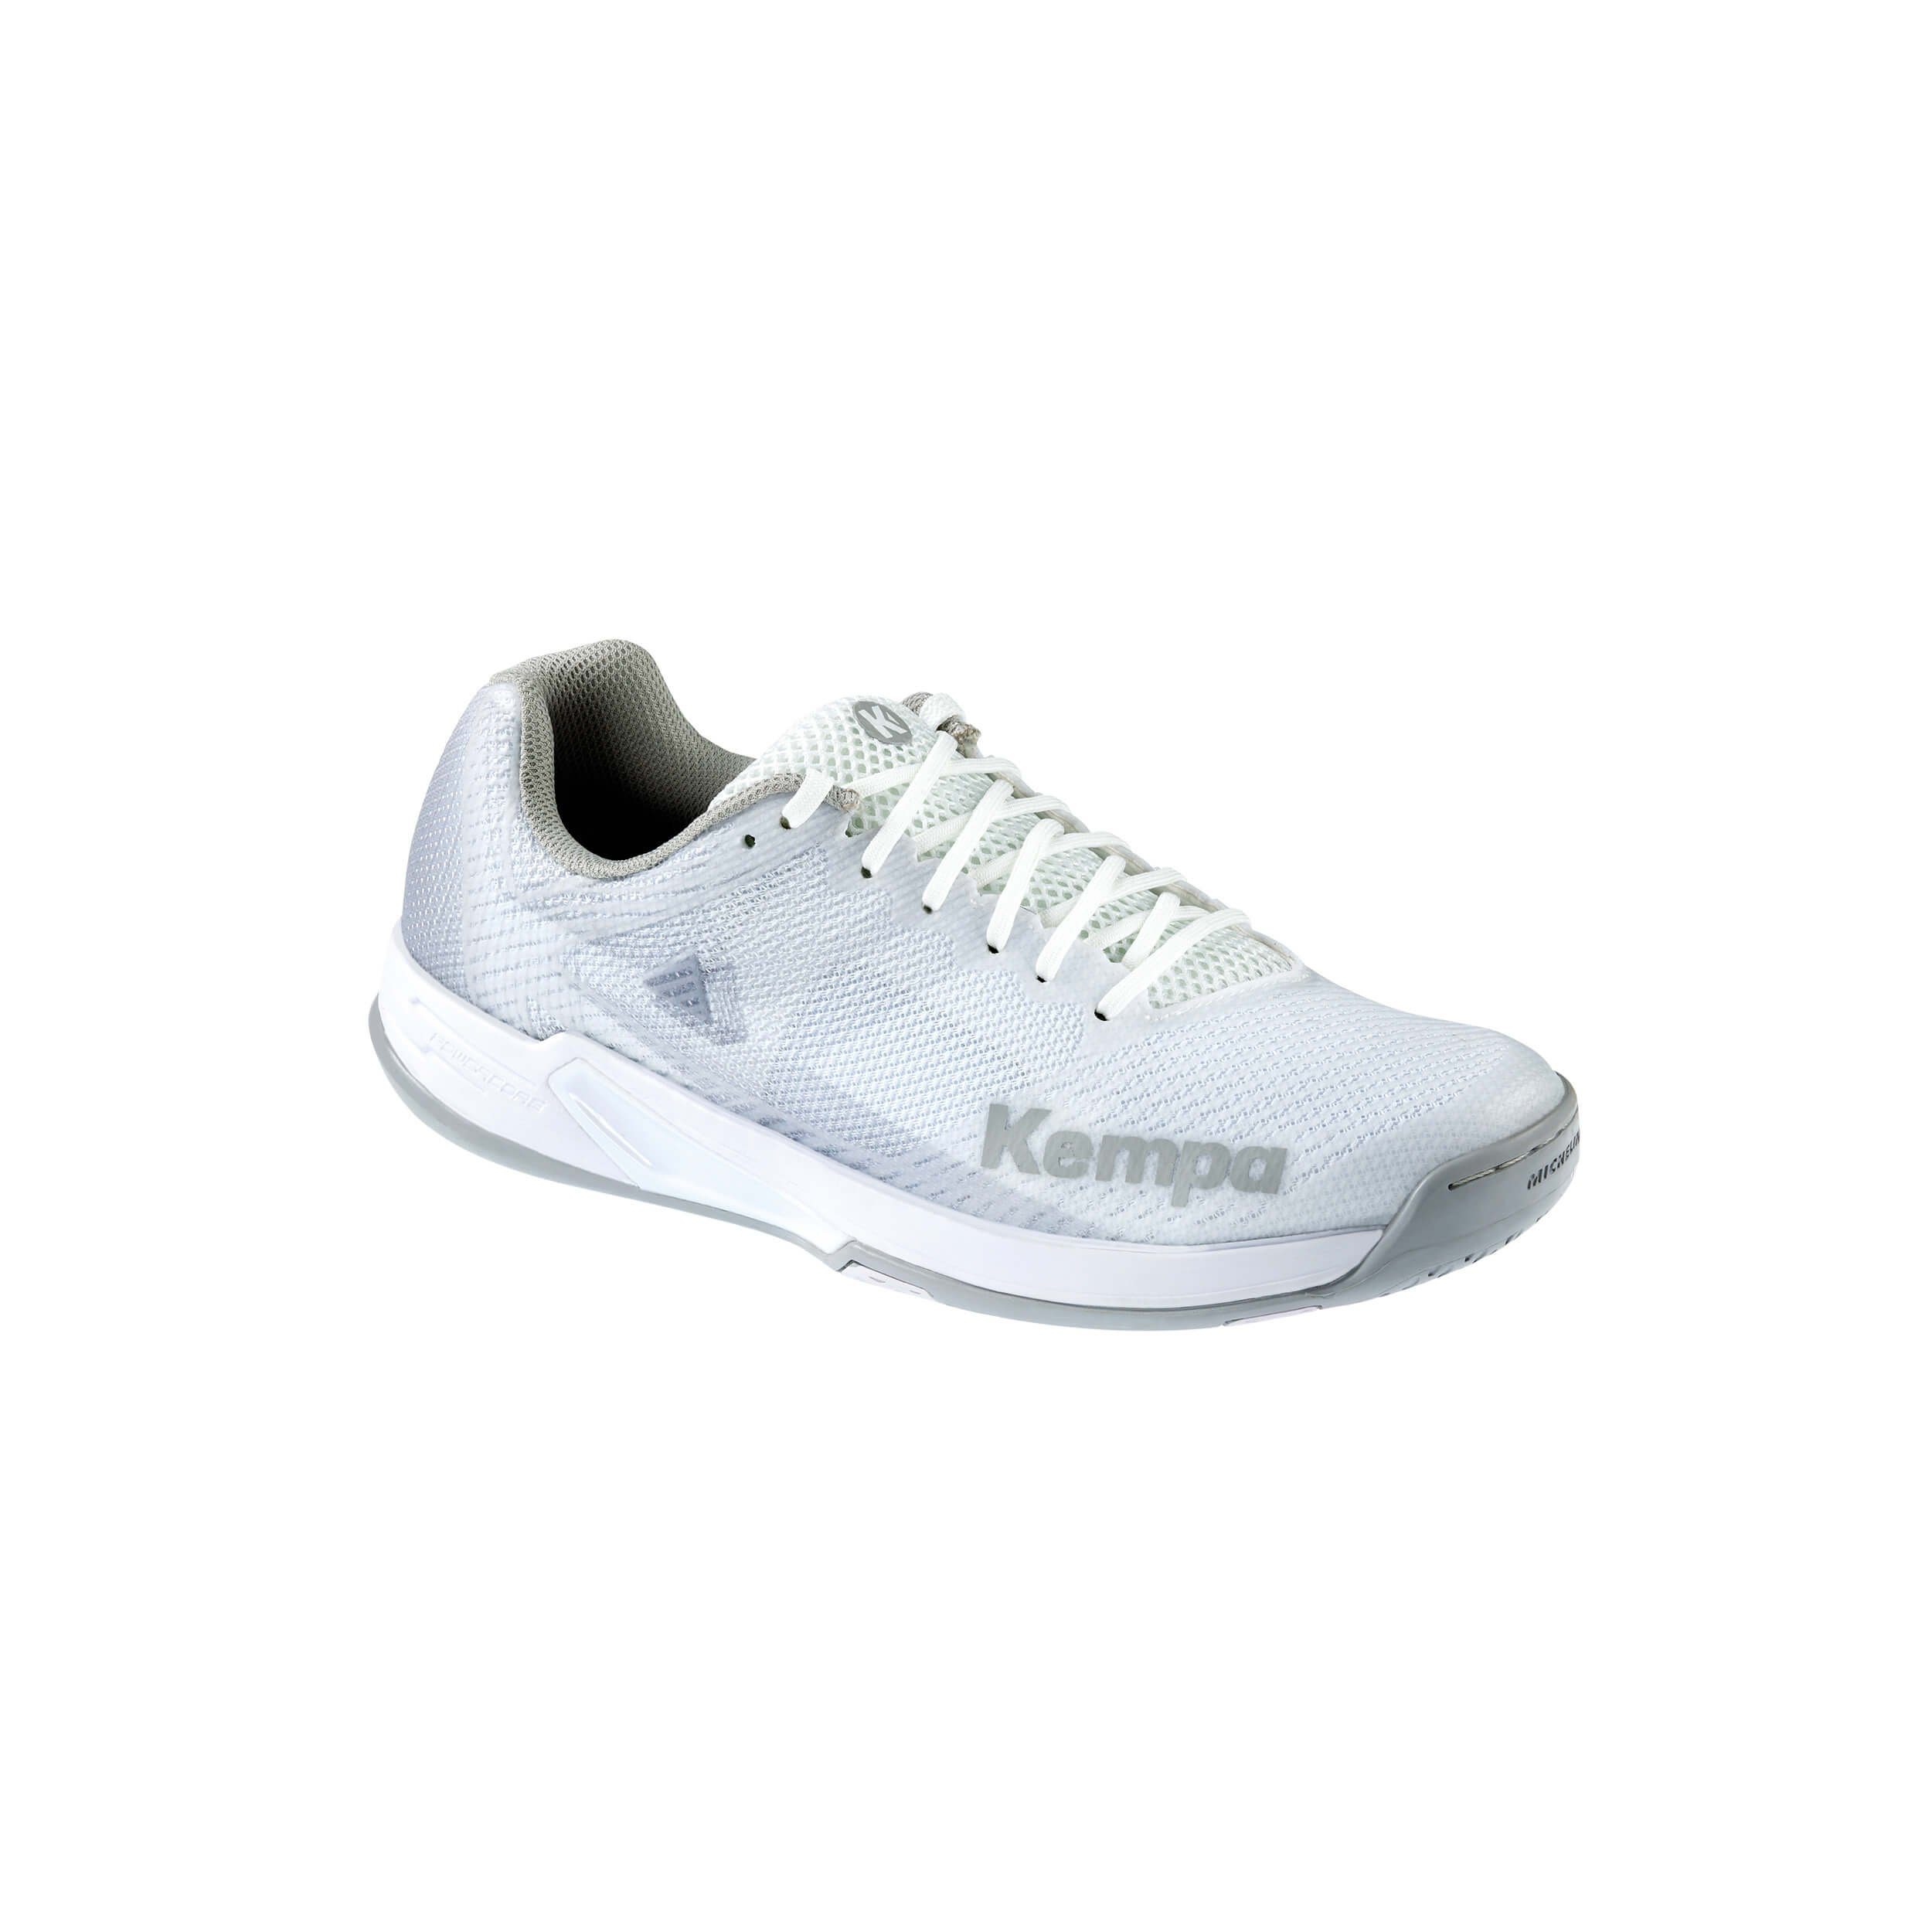 Kempa Kempa Hallen-Sport-Schuhe WING 2.0 WOMEN Hallenschuh unbekannt